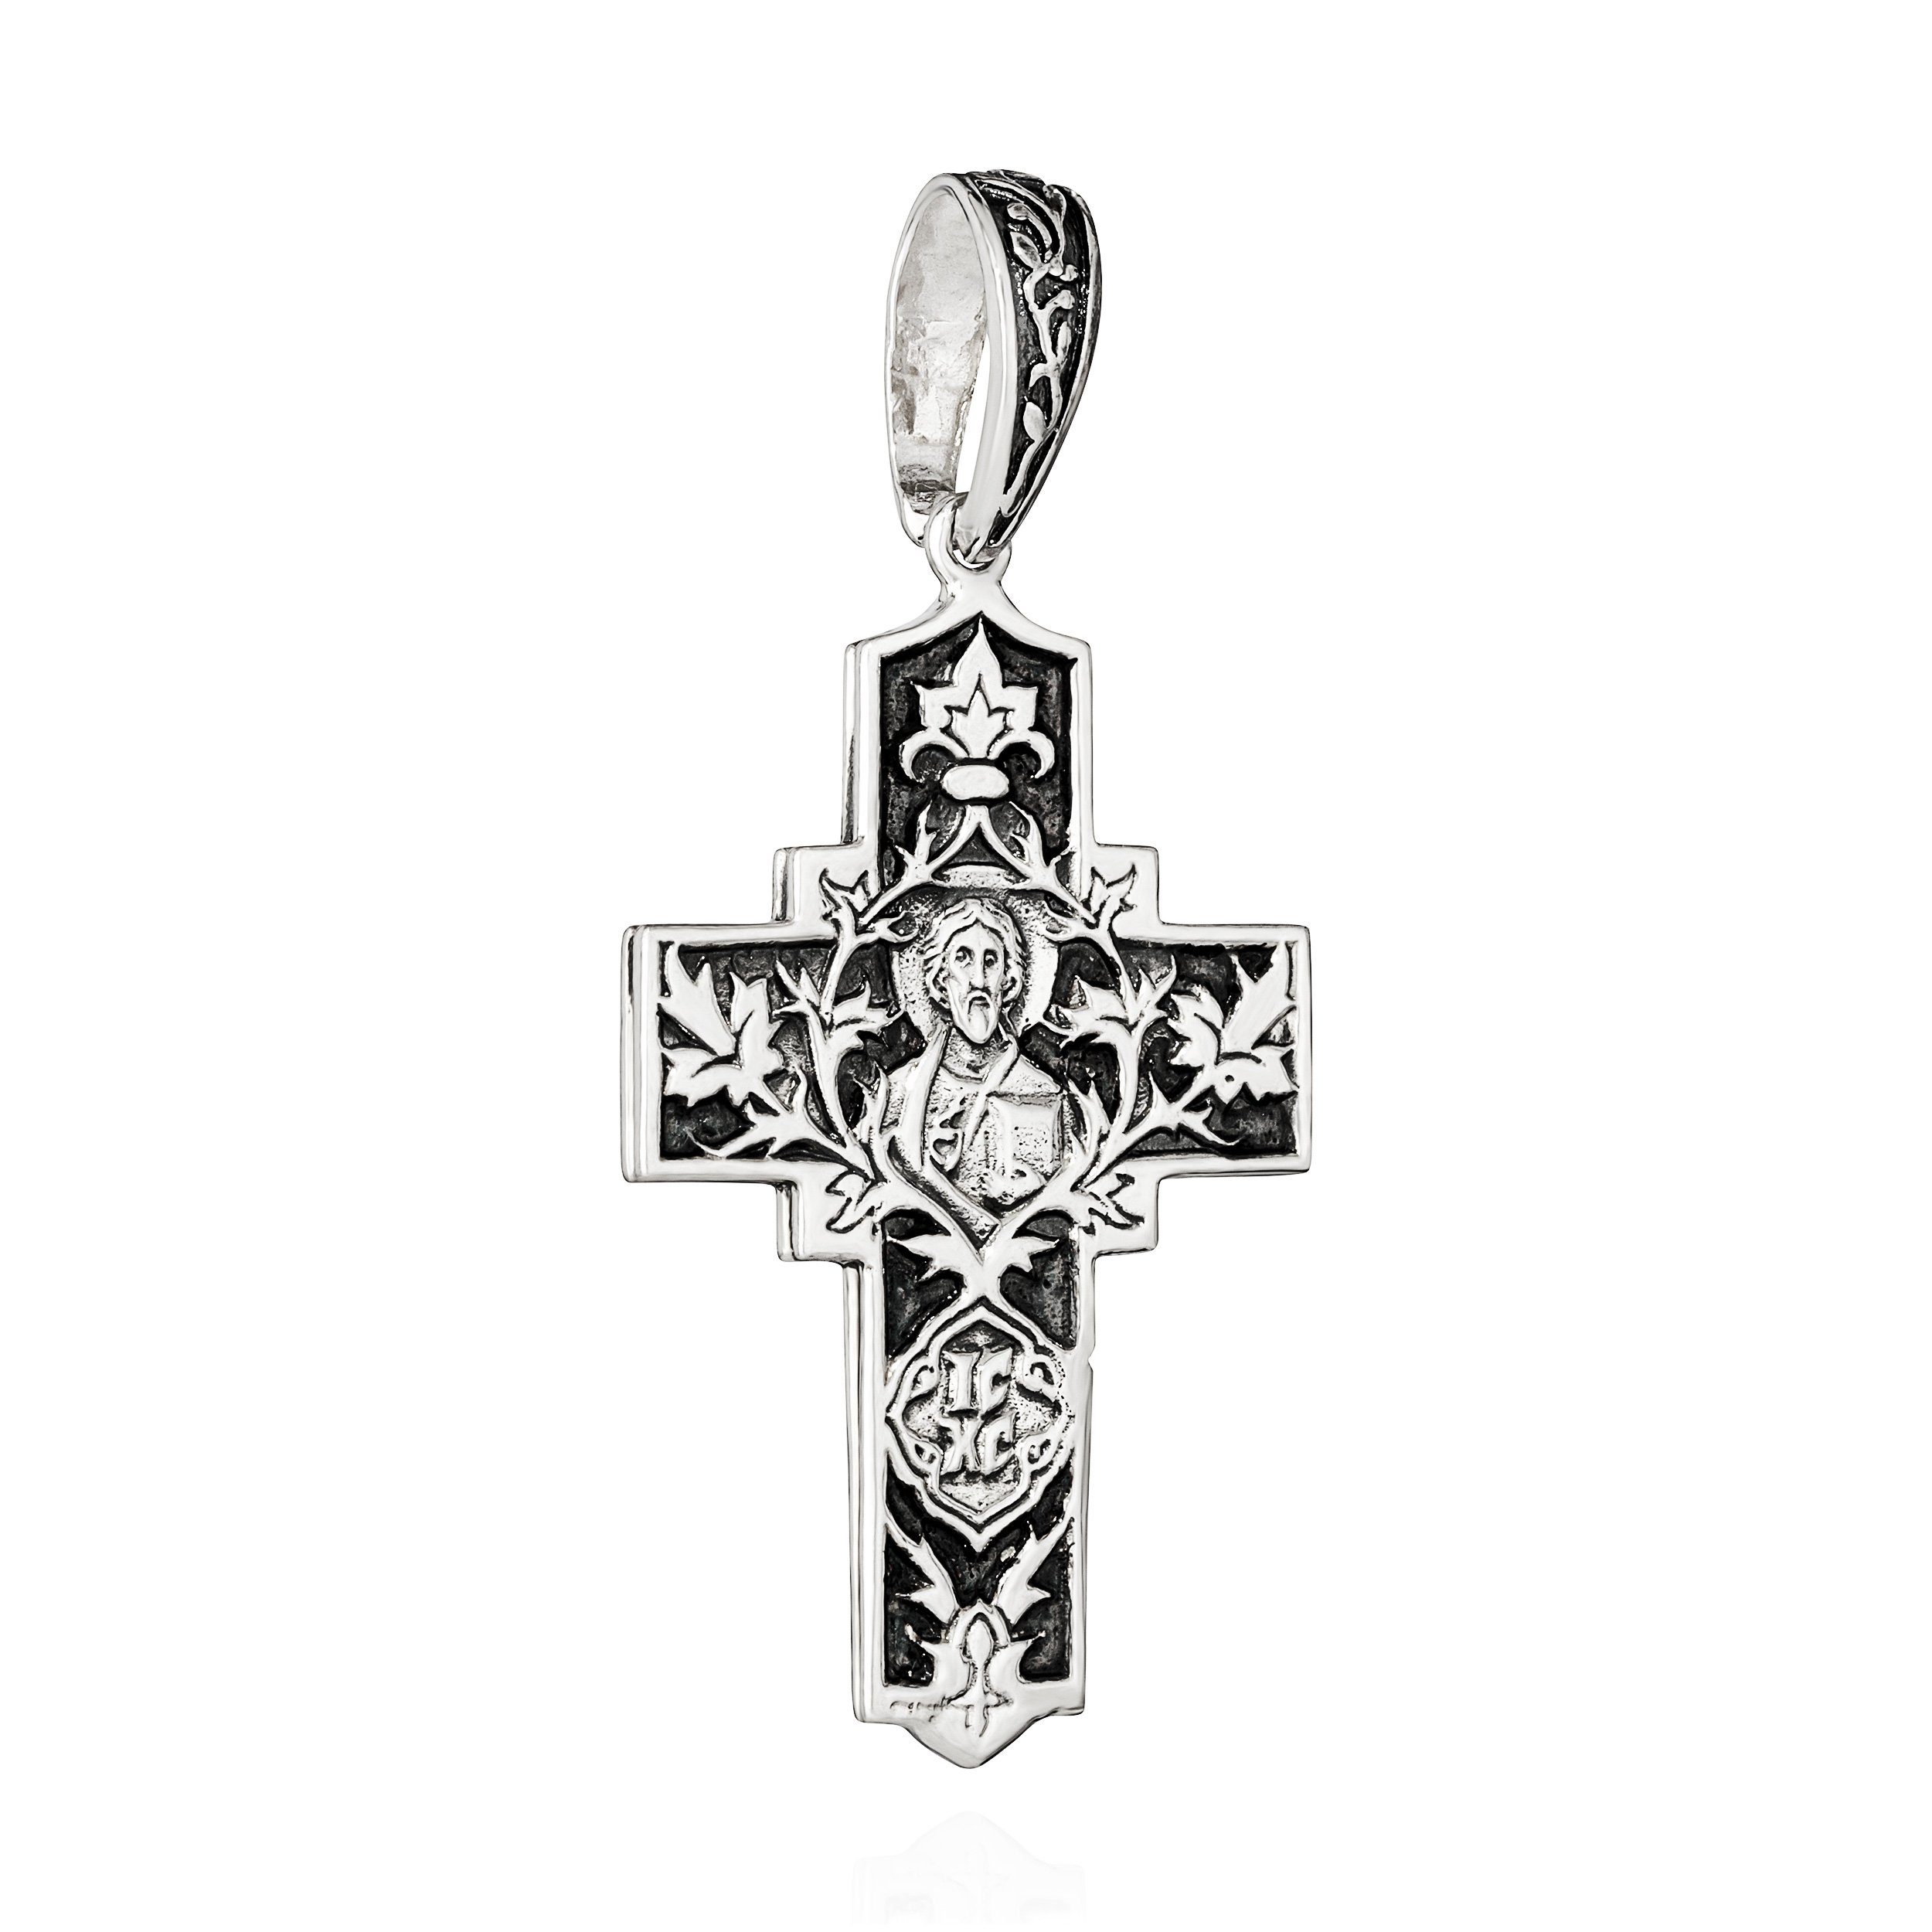 NKlaus Kettenanhänger Kettenanhänger Kreuz Mutter Gottes 925 Silber 41mm x 26,5mm Kruzifix -